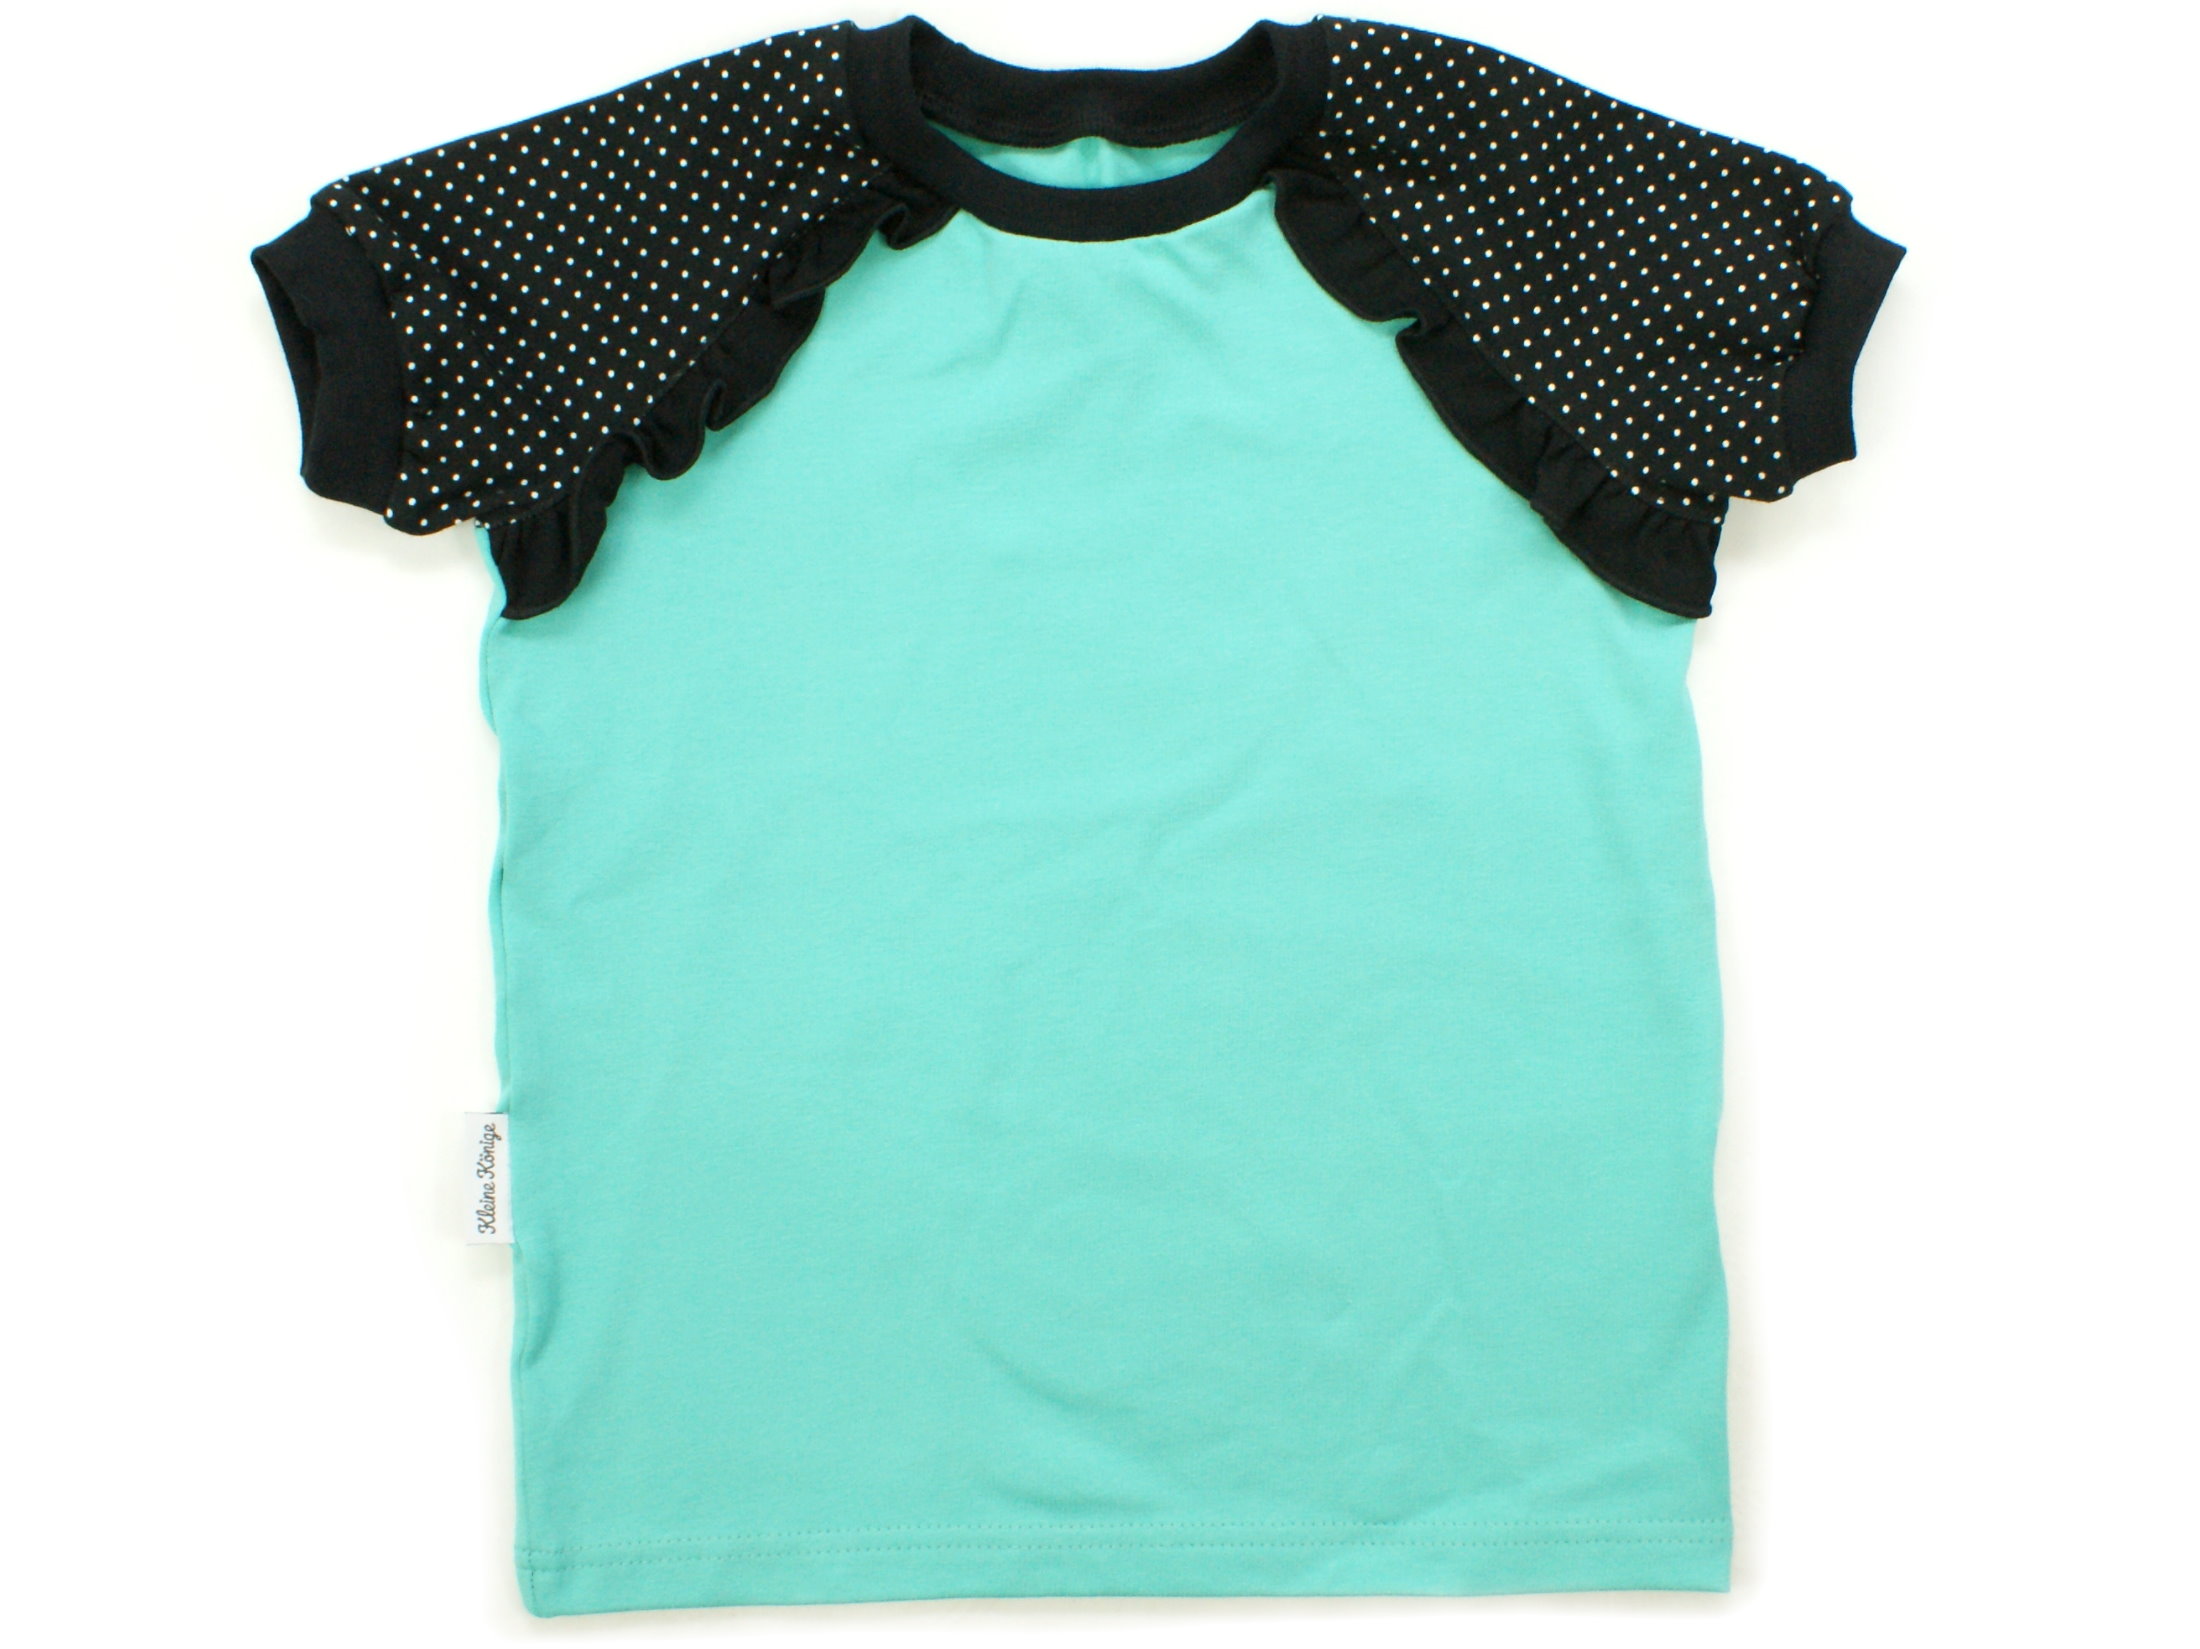 Kinder T-Shirt "Punkte" schwarz tannengrün